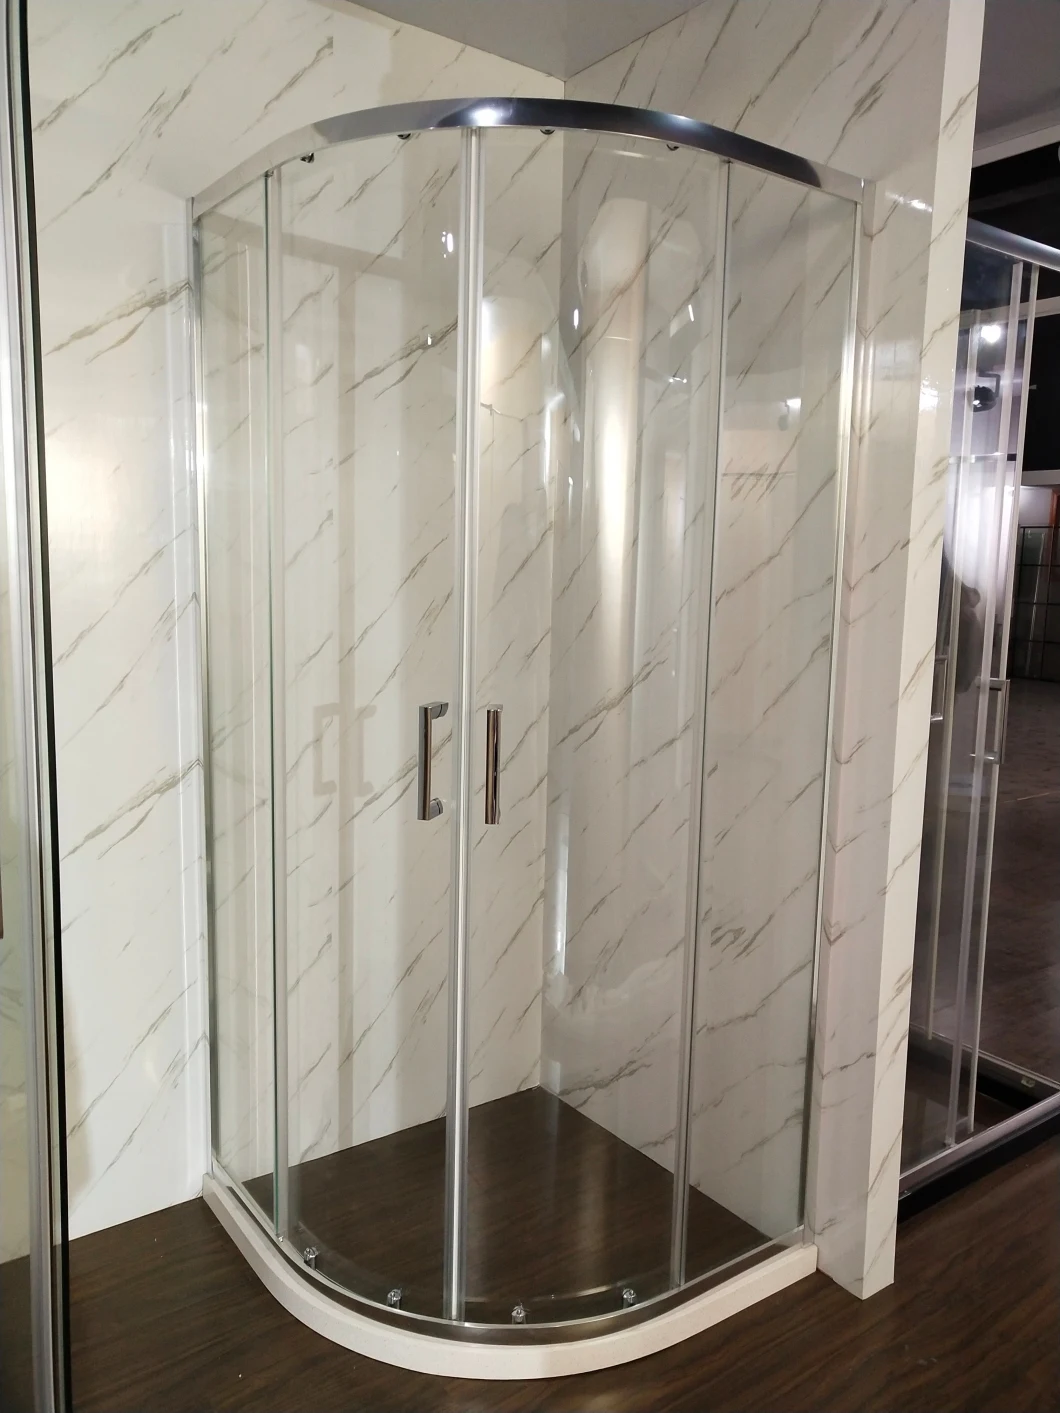 Economic Series Quadrant Shower Enclosure with Sliding Doors